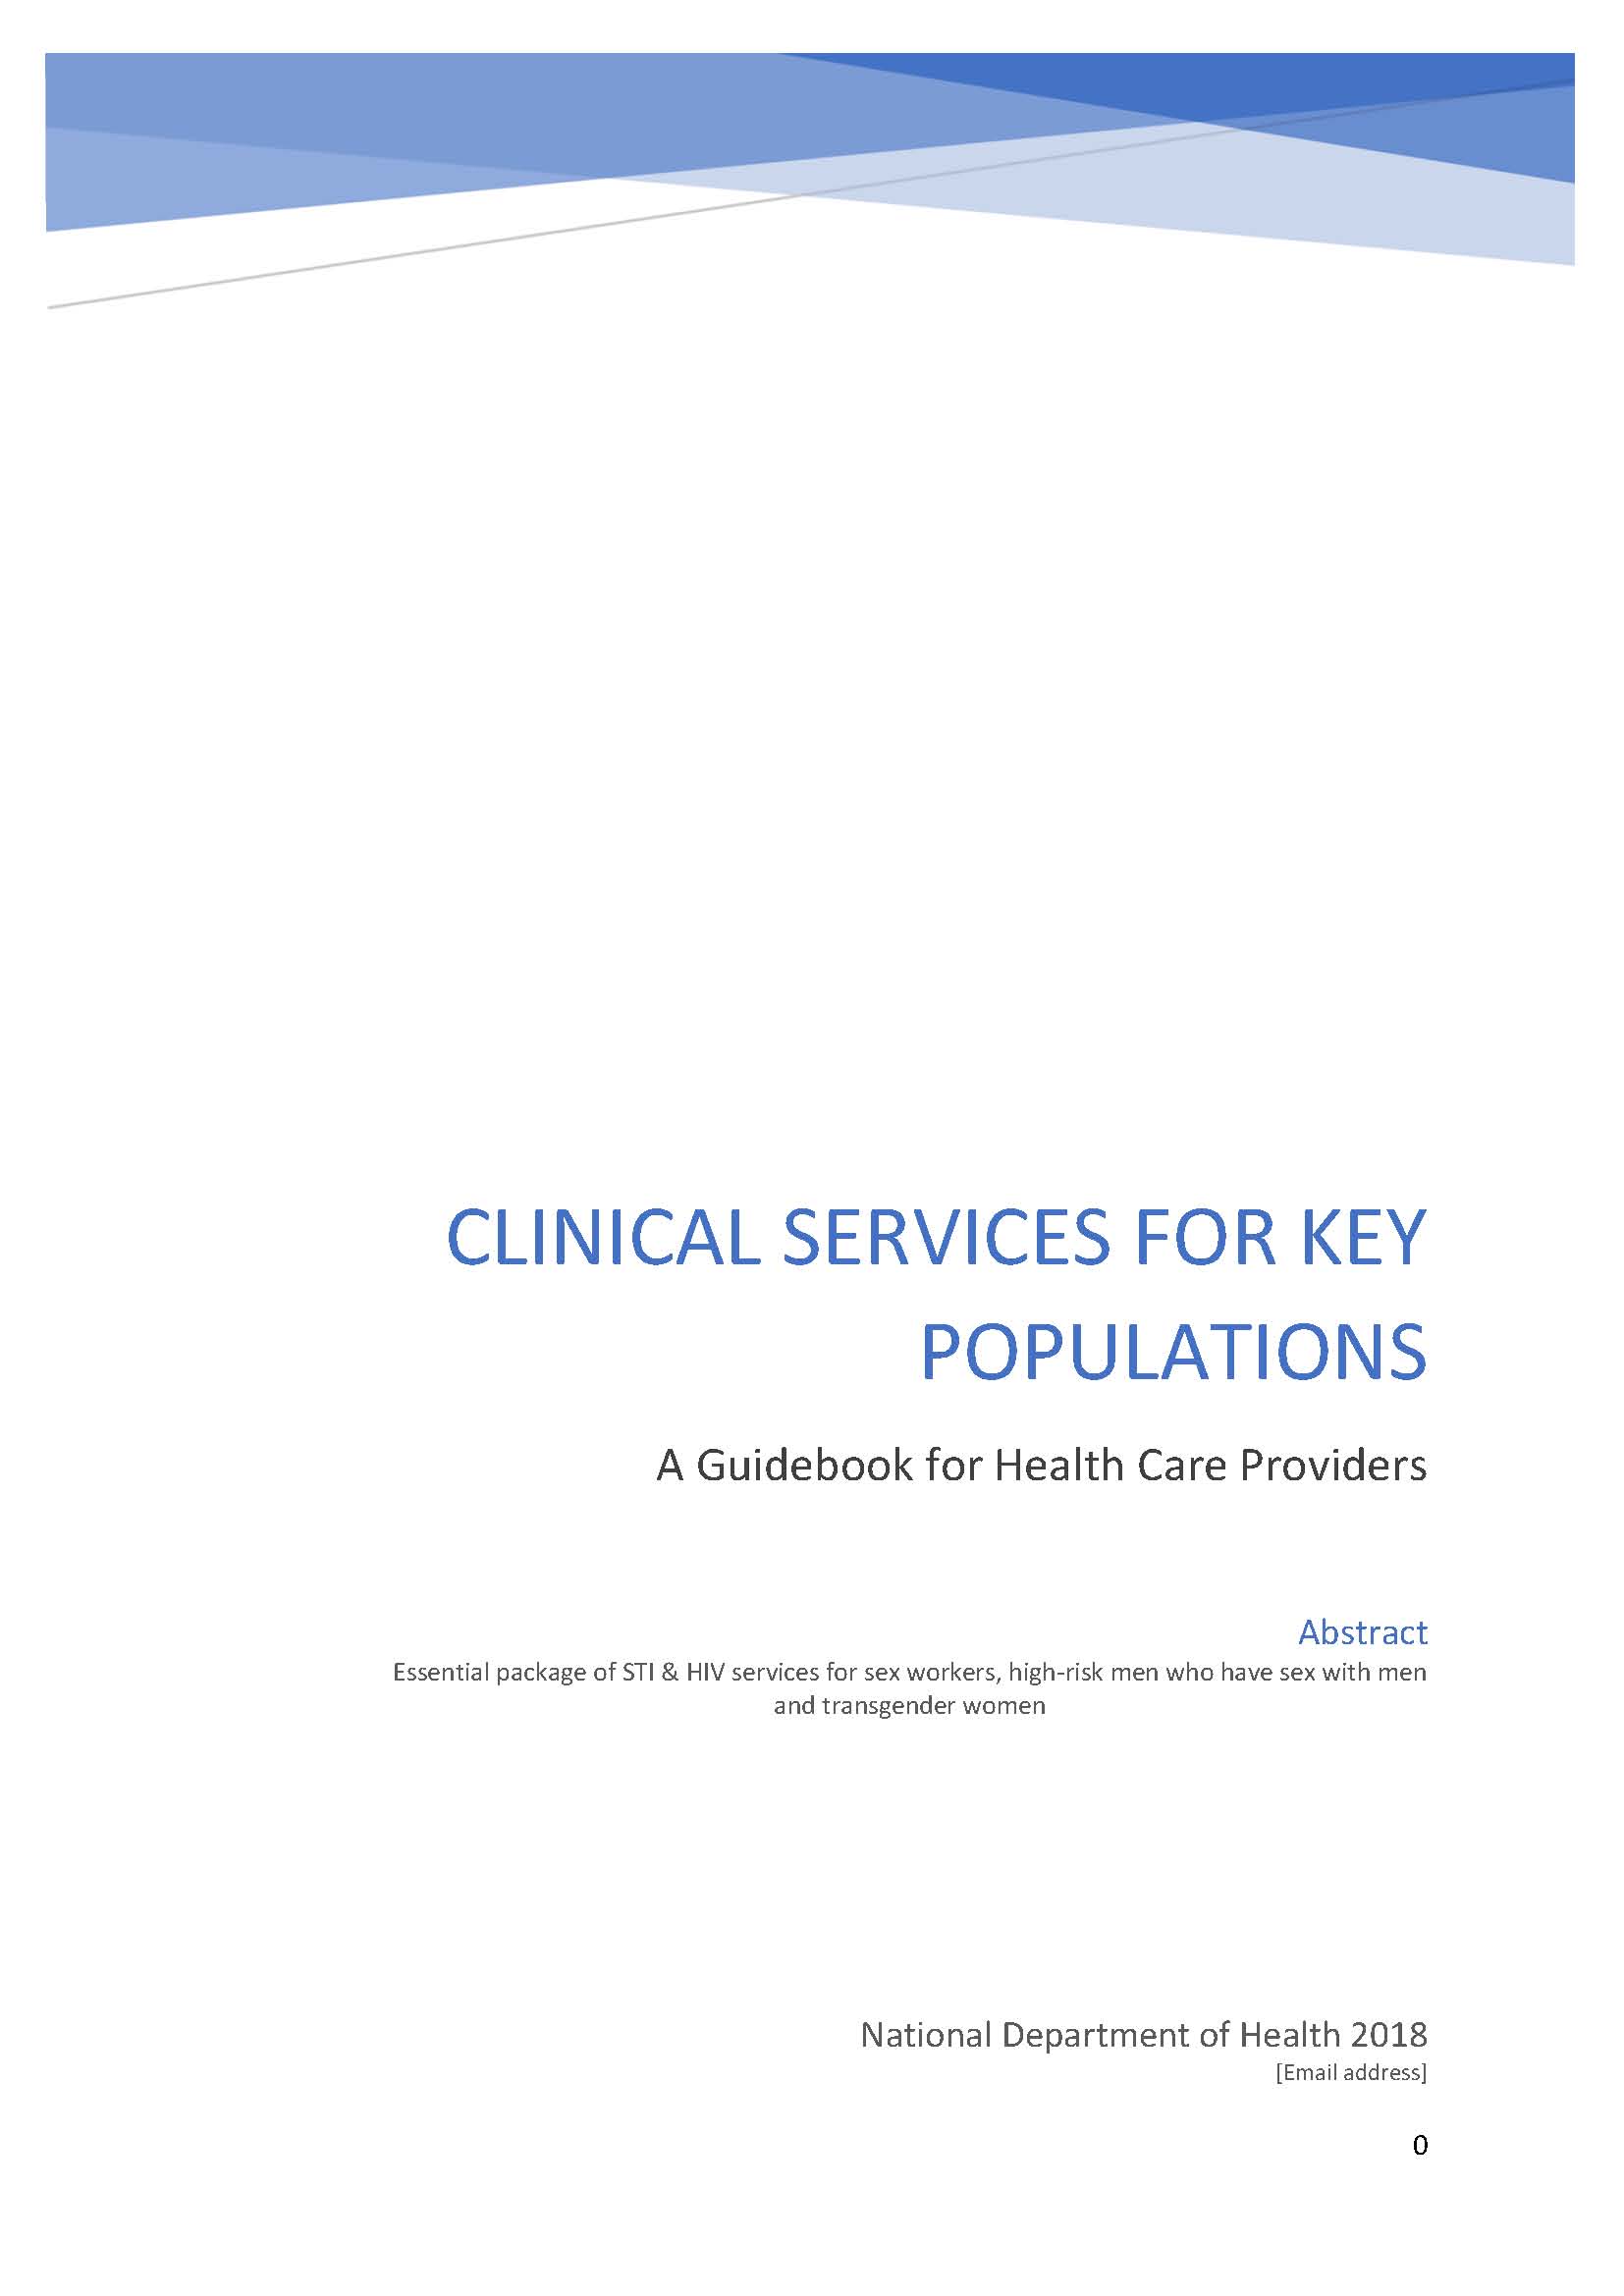 Serviços clínicos para populações-chave: Um guia para os prestadores de cuidados de saúde